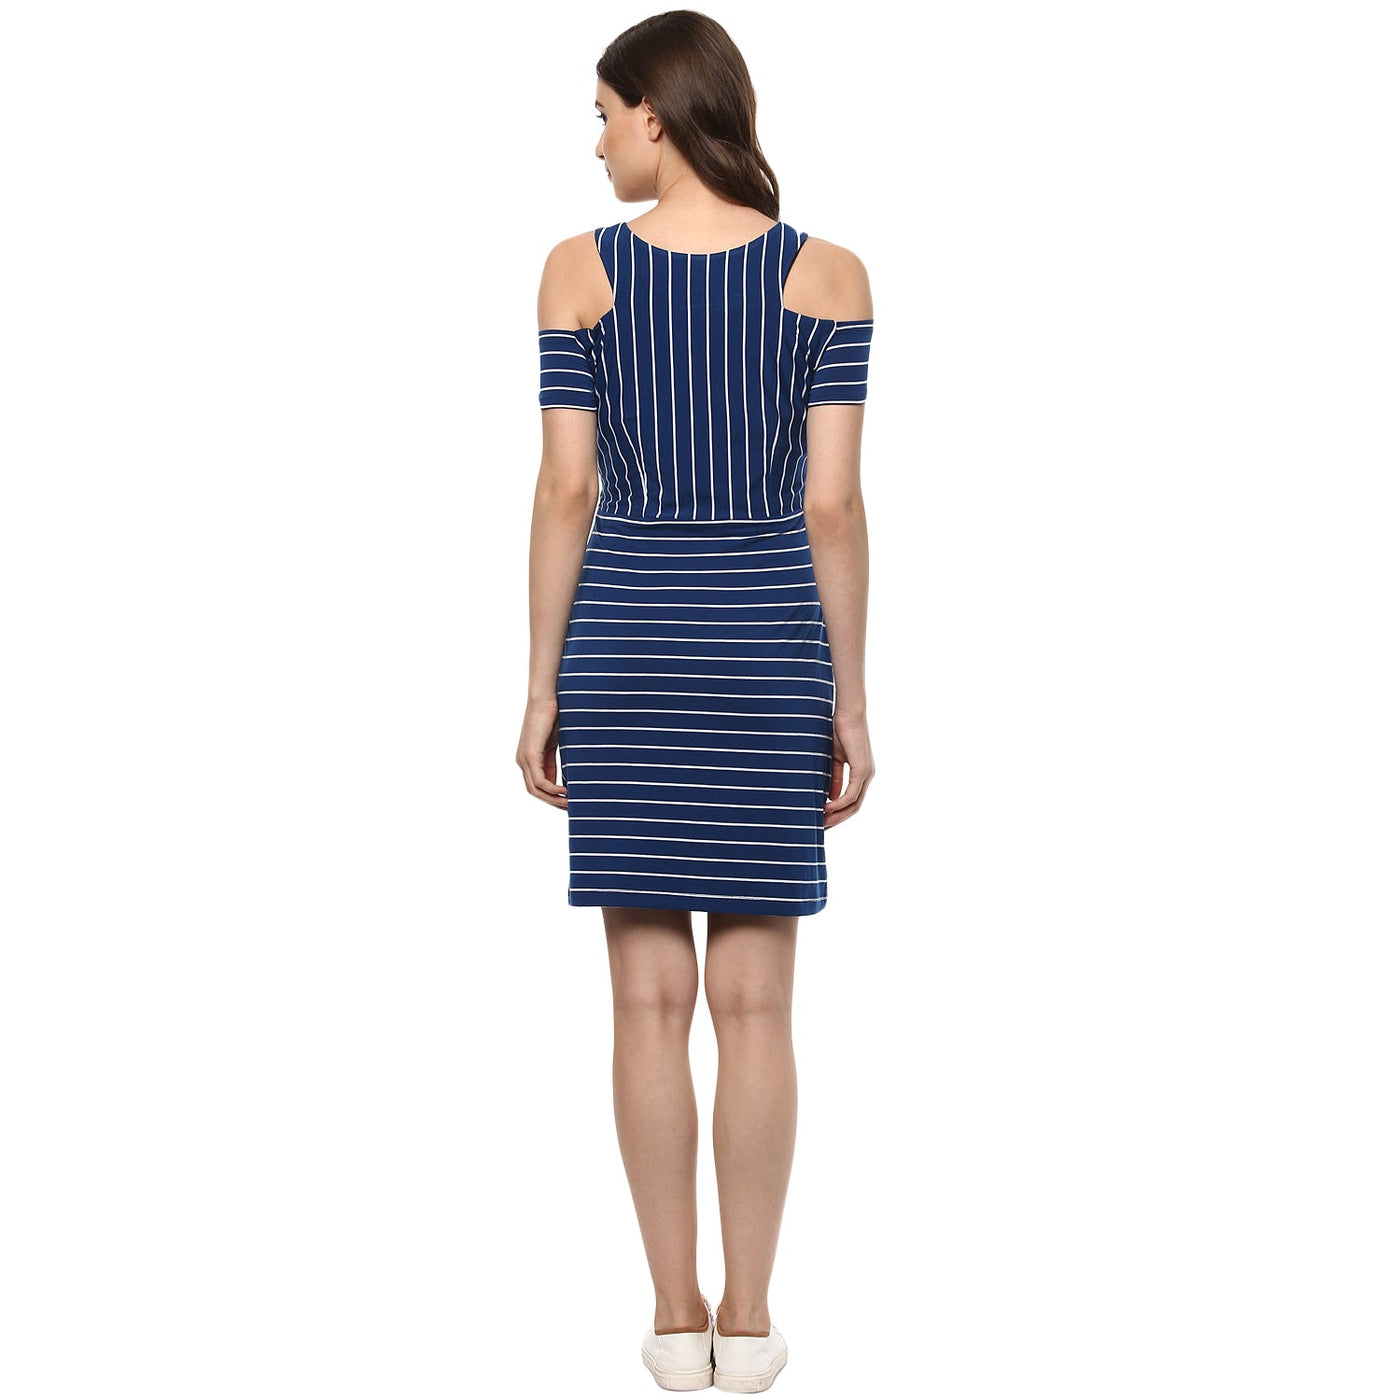 Stripe Dress With Shoulder -Cut Details